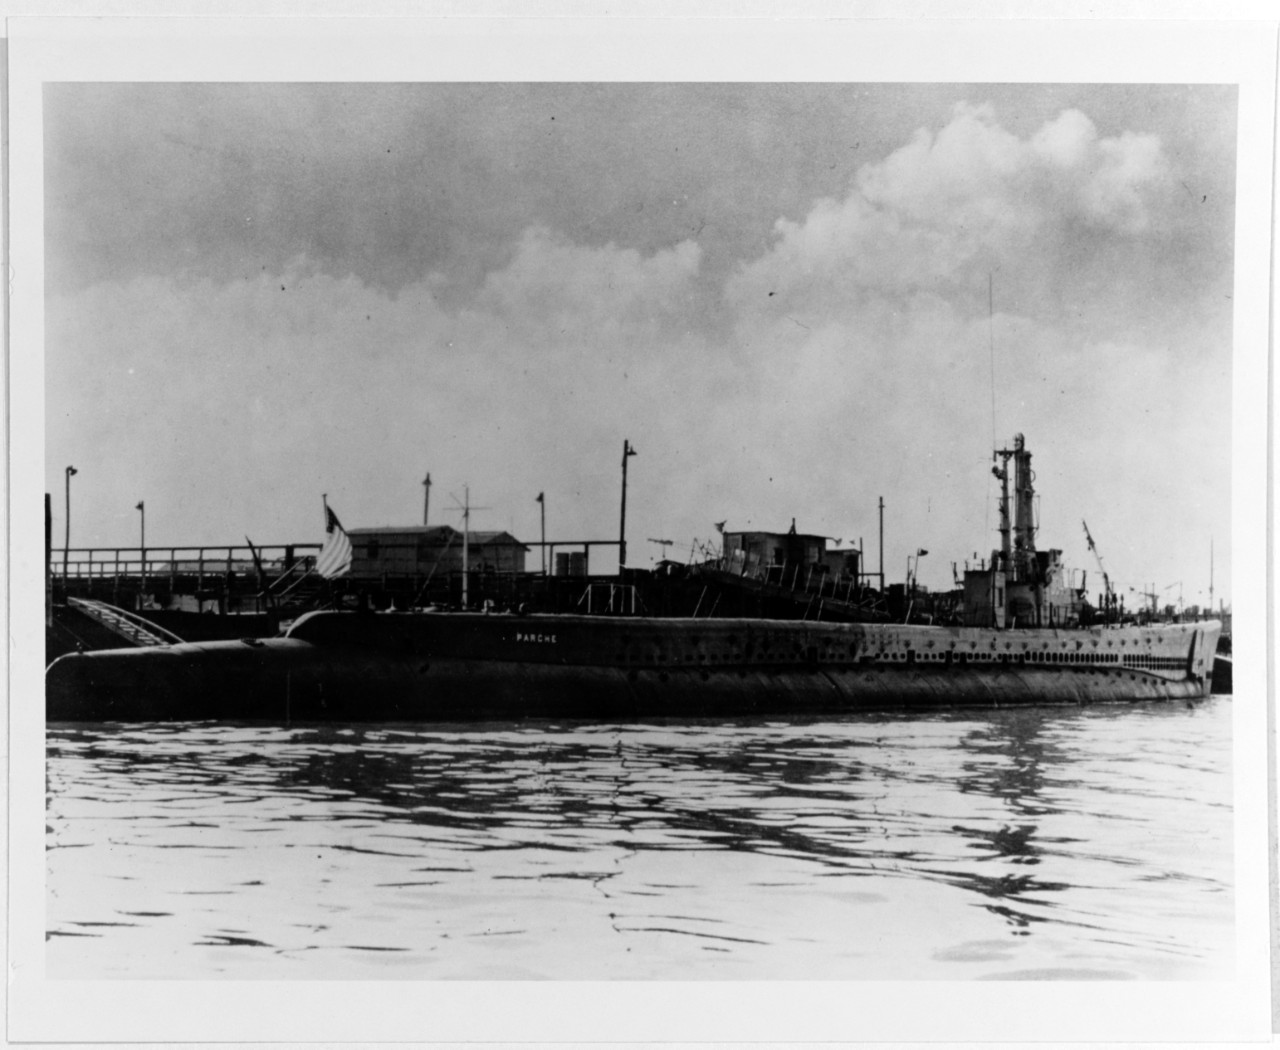 USS PARCHE (SS-384)